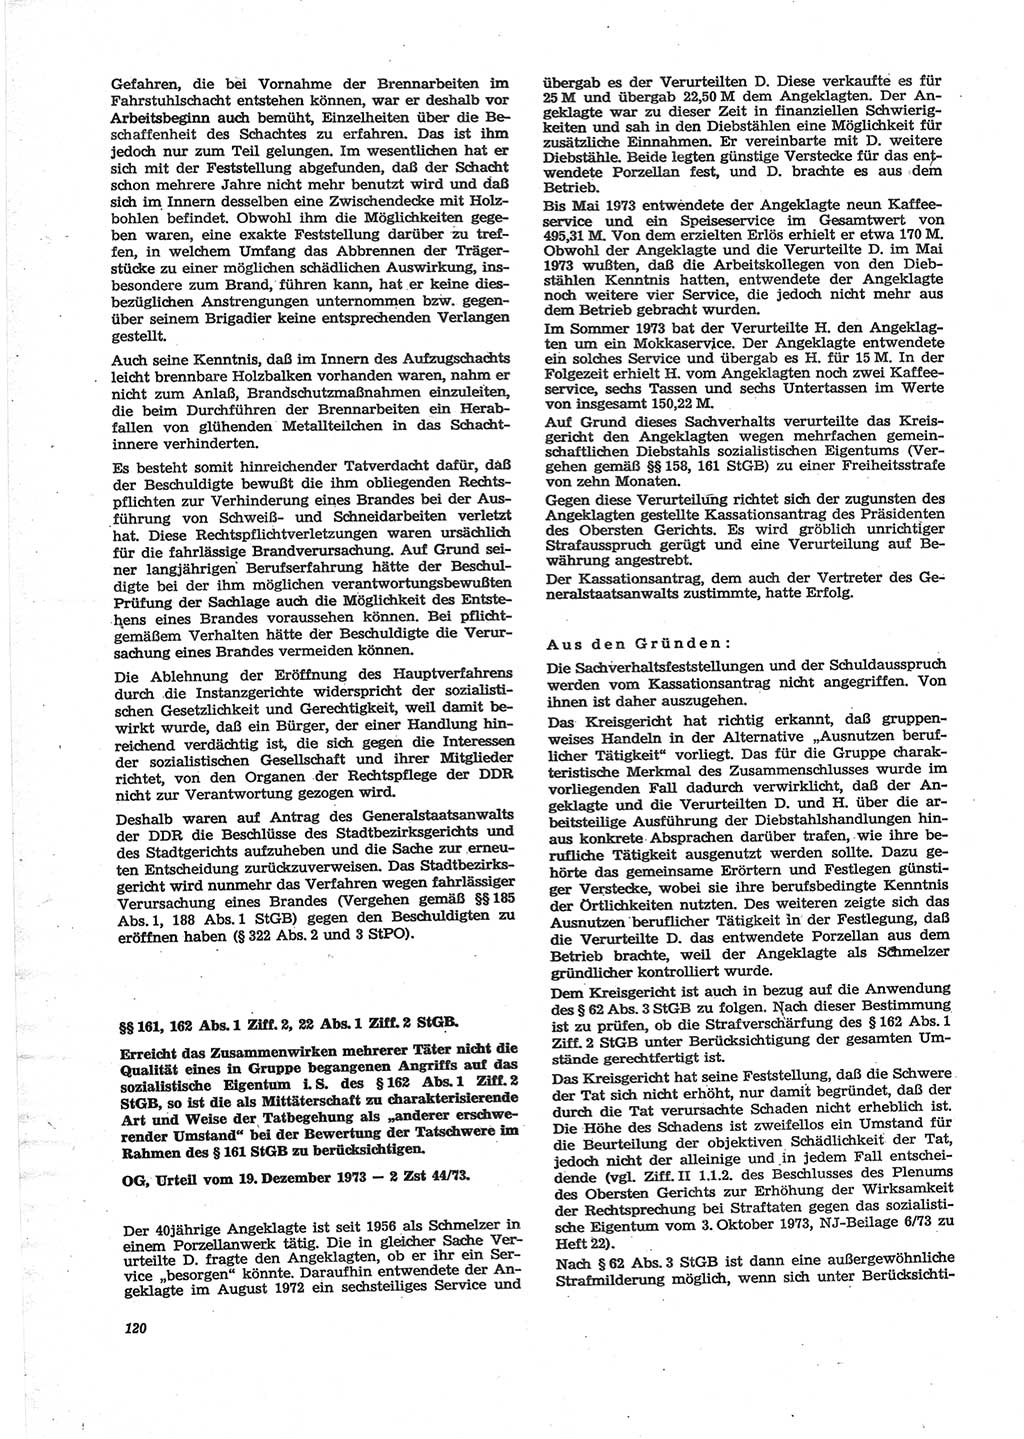 Neue Justiz (NJ), Zeitschrift für Recht und Rechtswissenschaft [Deutsche Demokratische Republik (DDR)], 28. Jahrgang 1974, Seite 120 (NJ DDR 1974, S. 120)